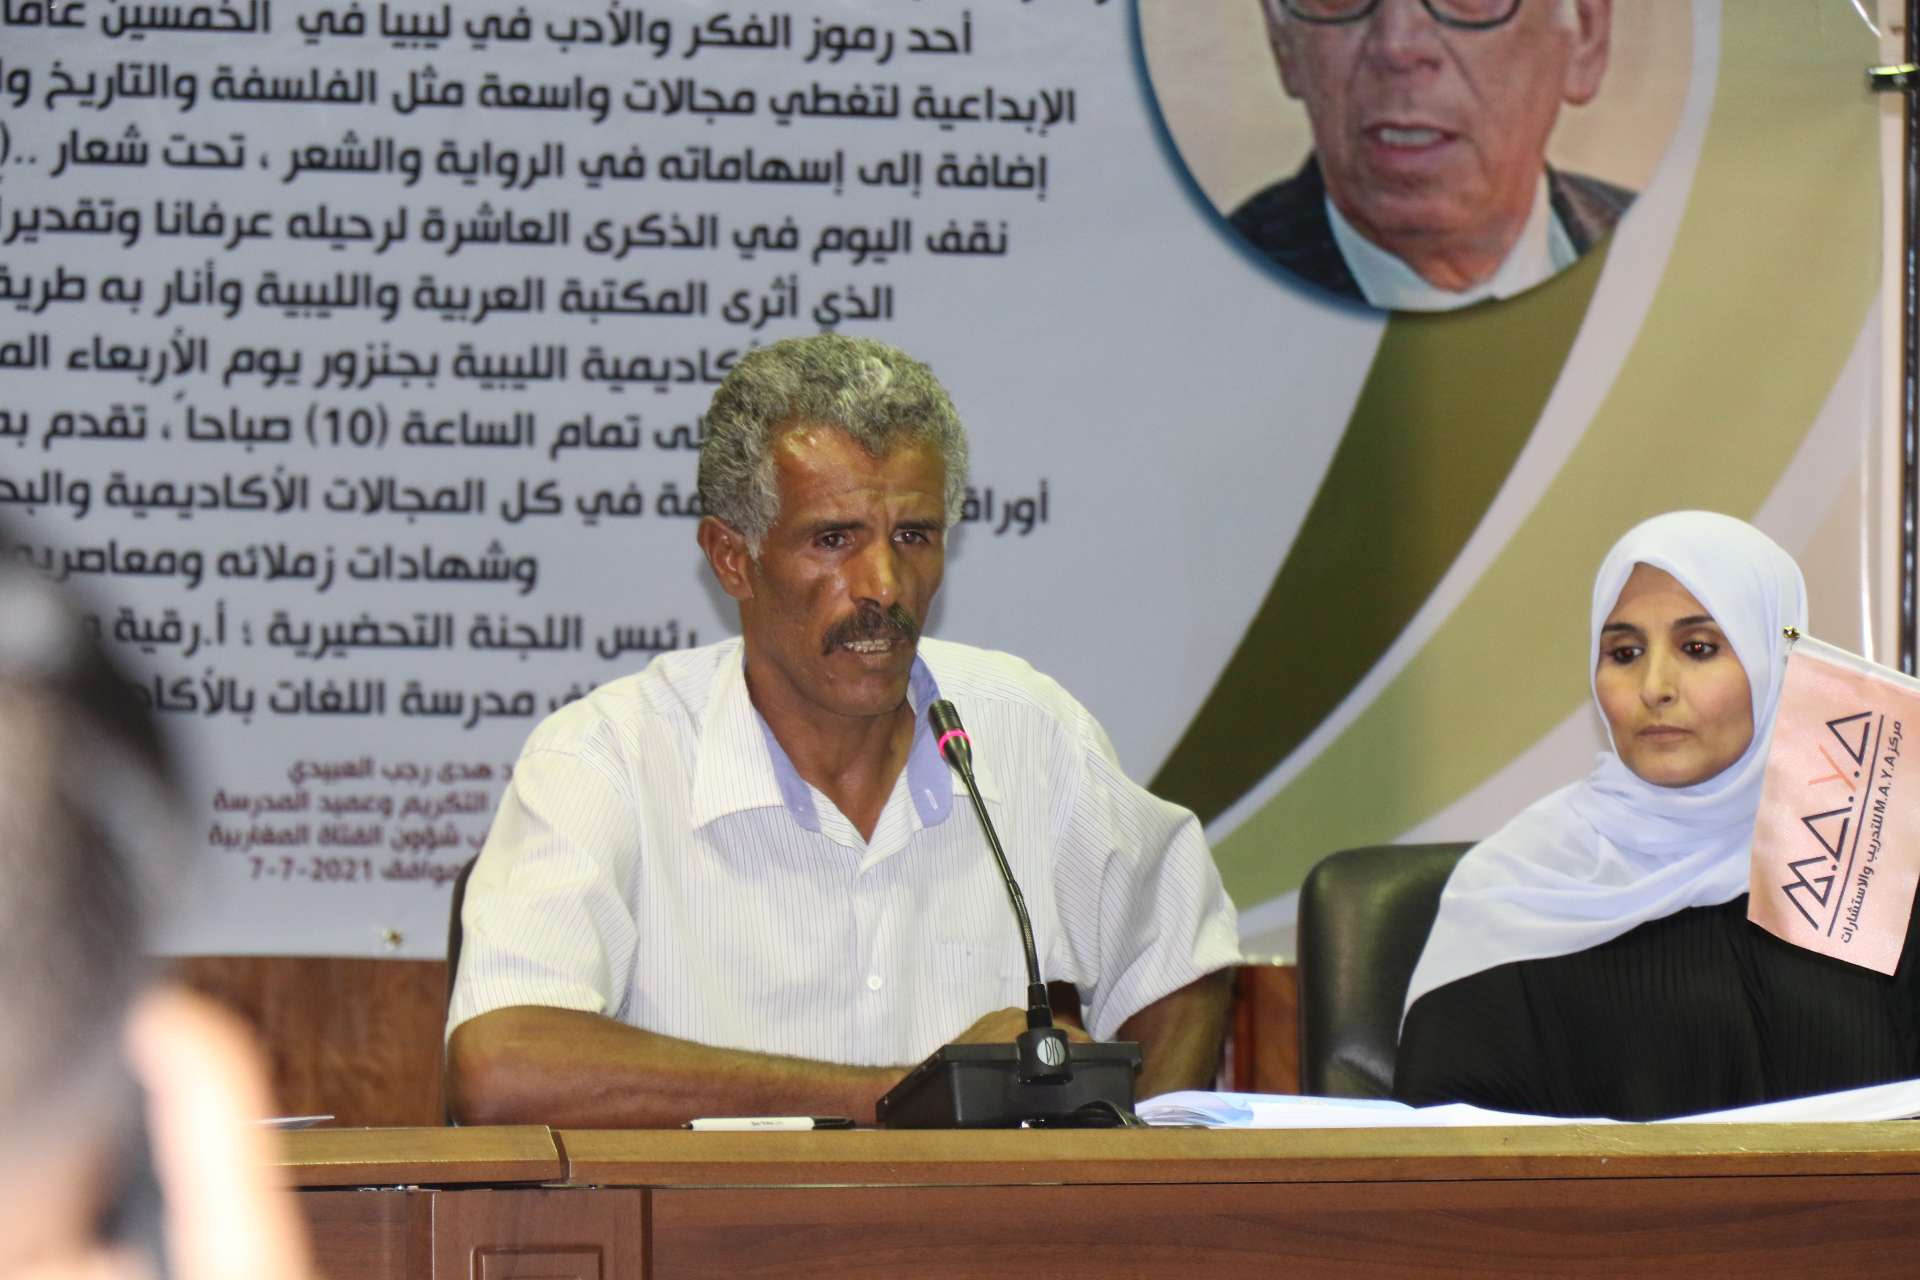 الأكاديمية الليبية تحيي الذِّكْرَى العَاشِرَة لِرَحيلِ العَلاَّمة الدكتور علي فهمي خشيم